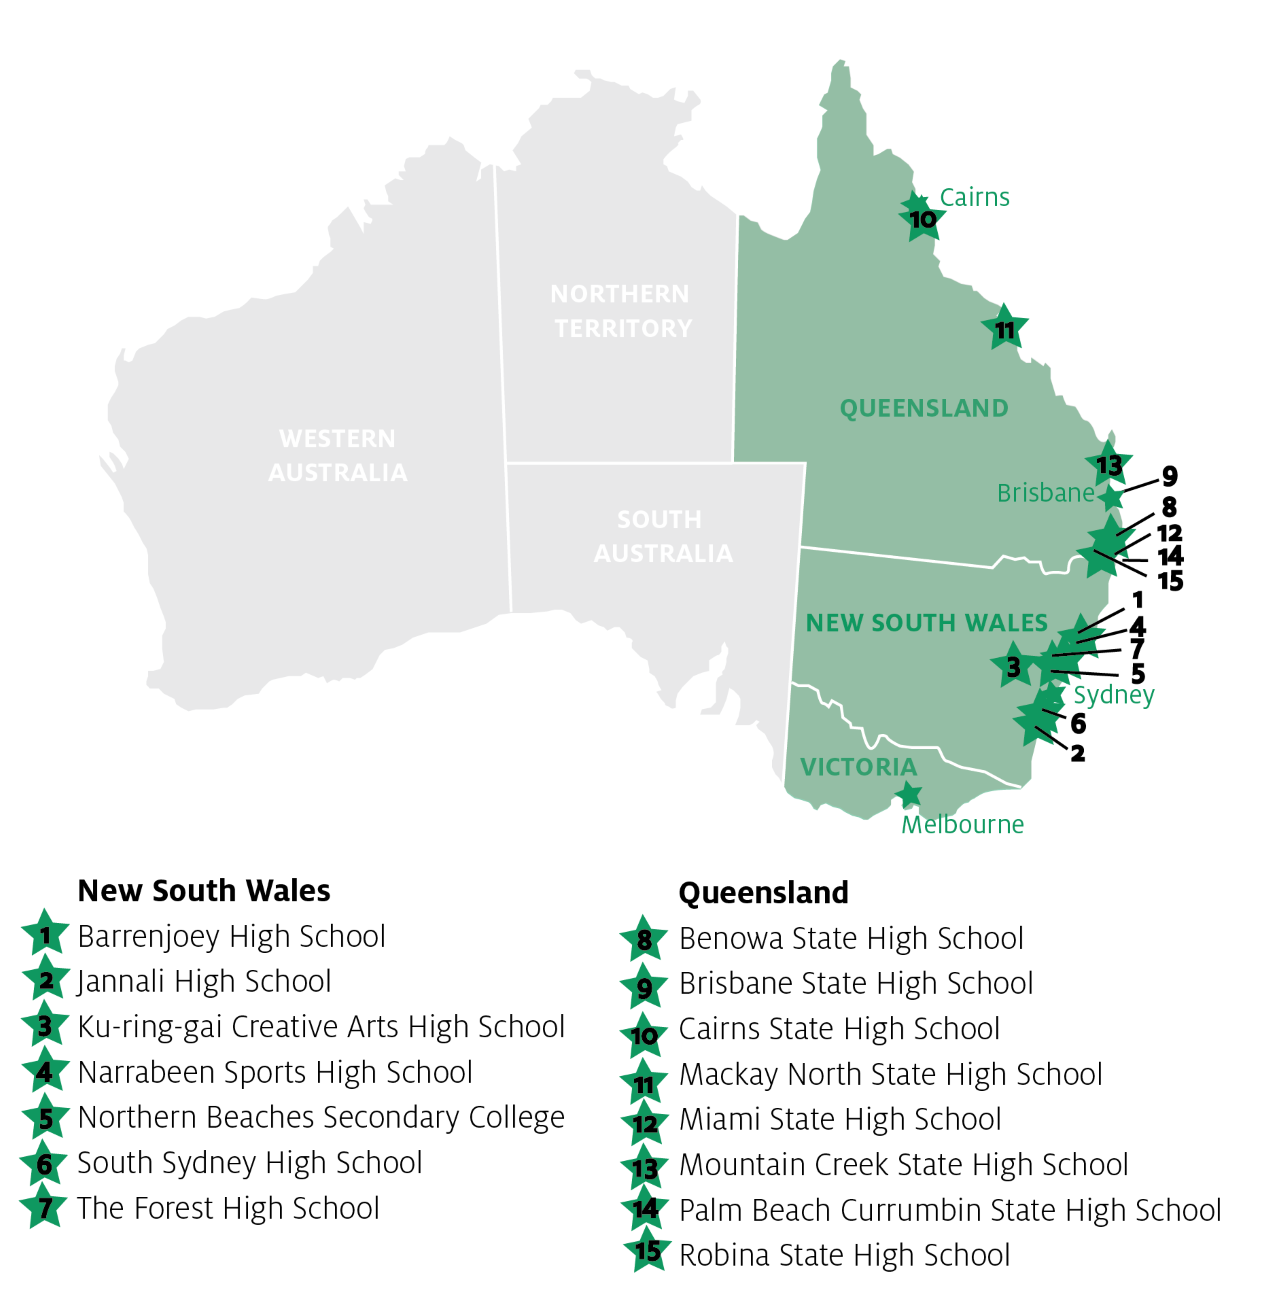 Schulen und Regionen für Schüleraustausch in Australien